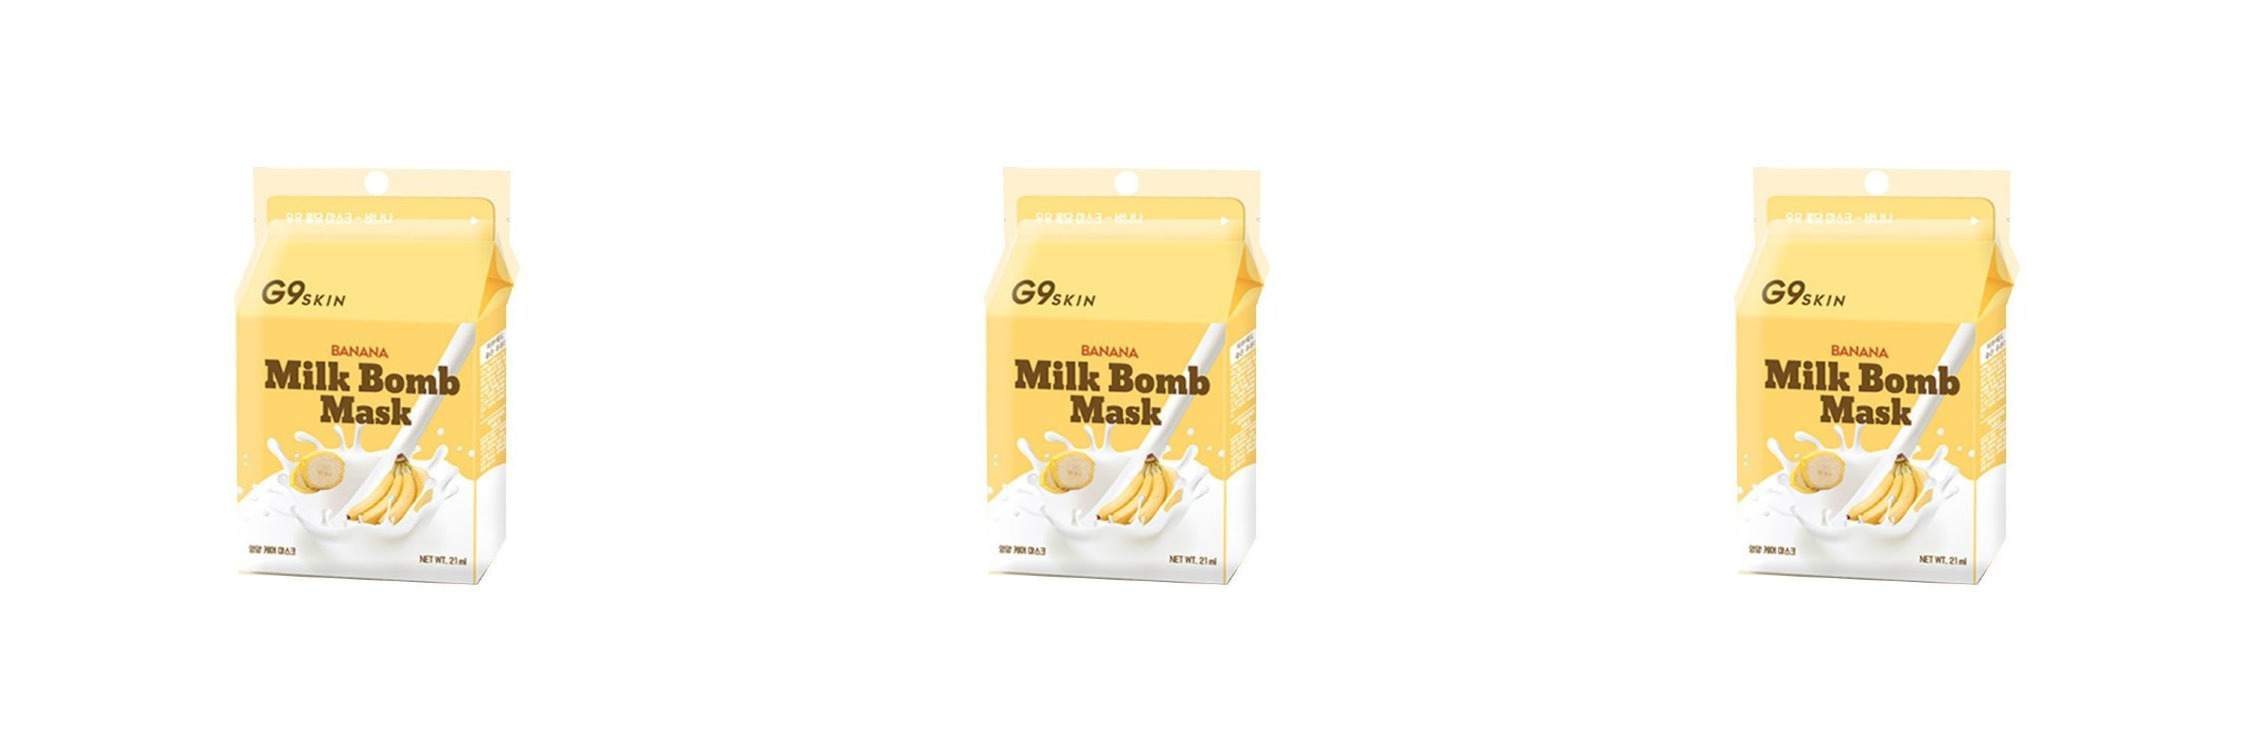 Тканевая маска для лица G9SKIN milk bomb mask banana 25мл 3шт